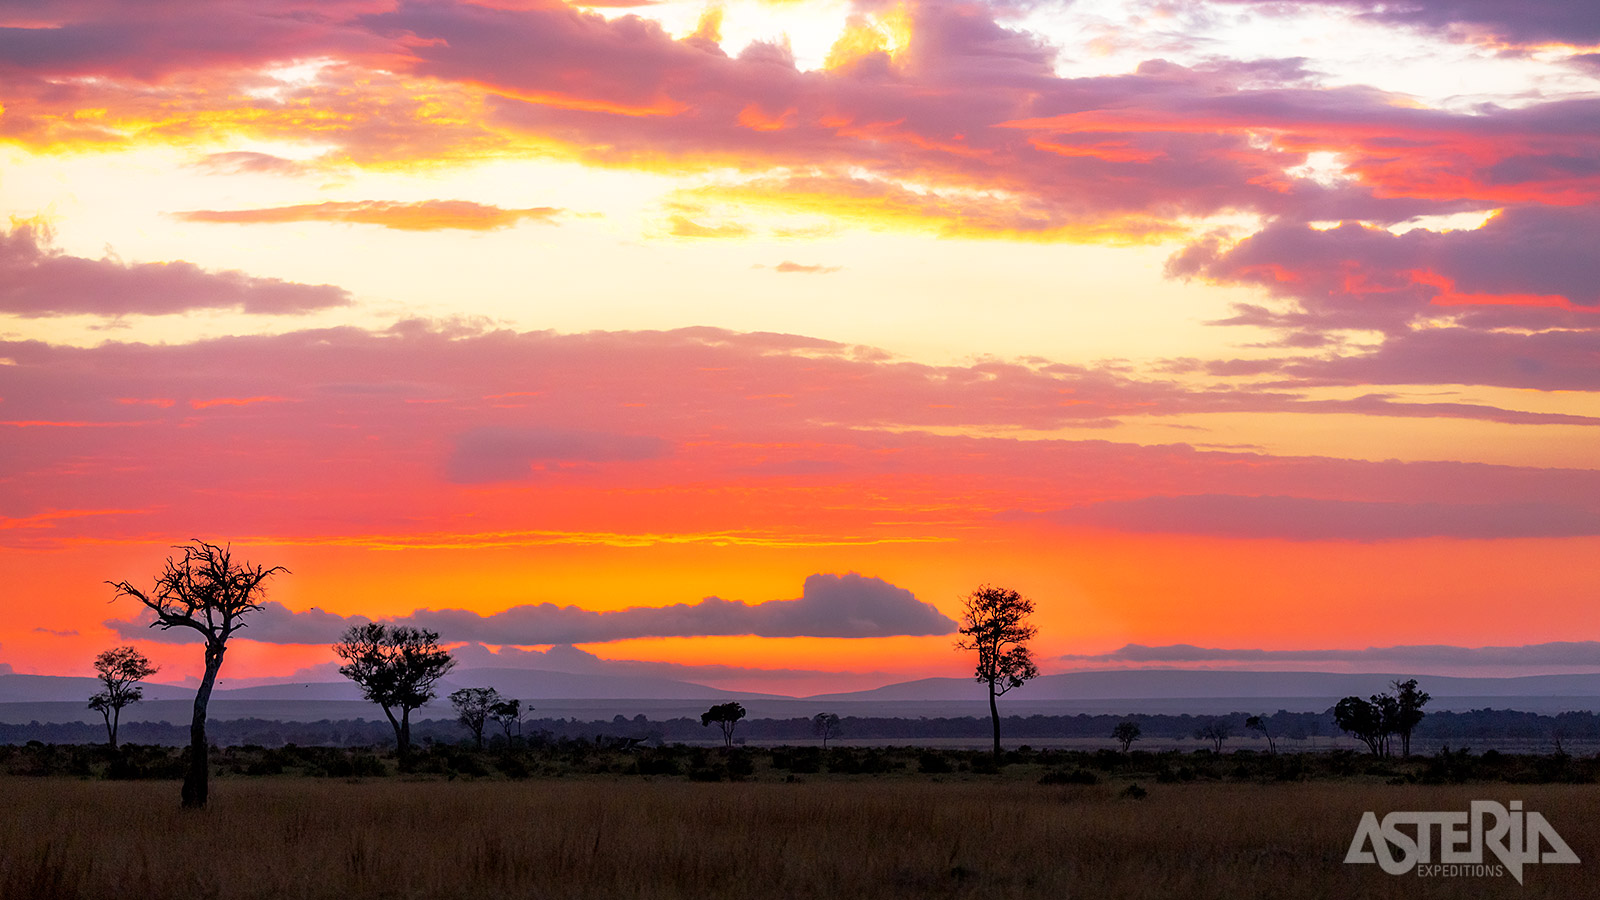 Welkom in Masai Mara, Kenia’s grootste wildreservaat